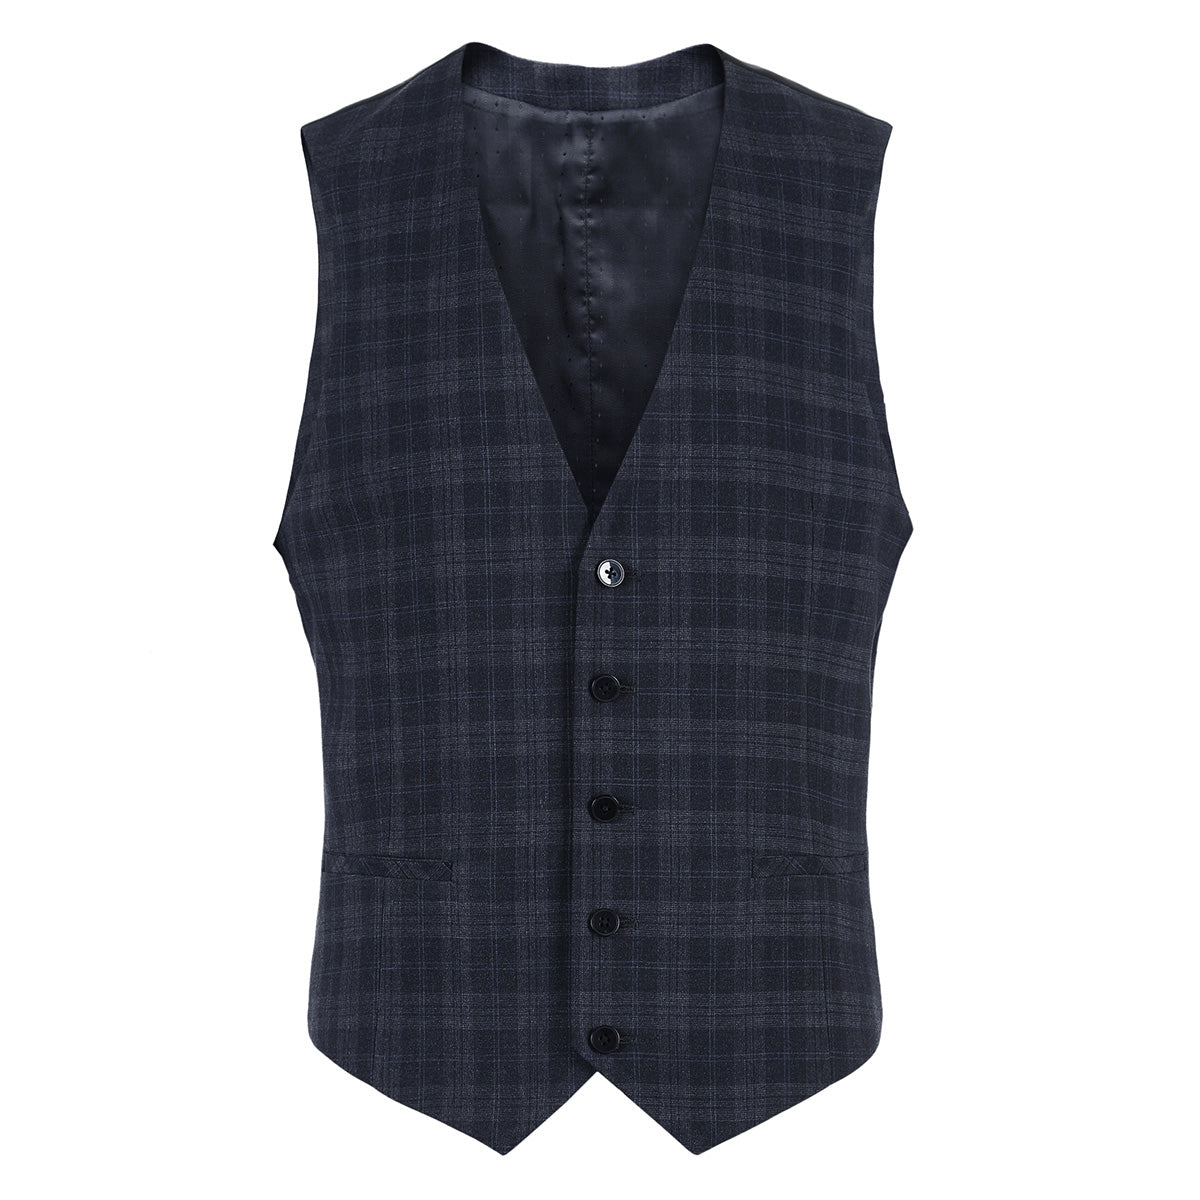 Men's dark check suit vest